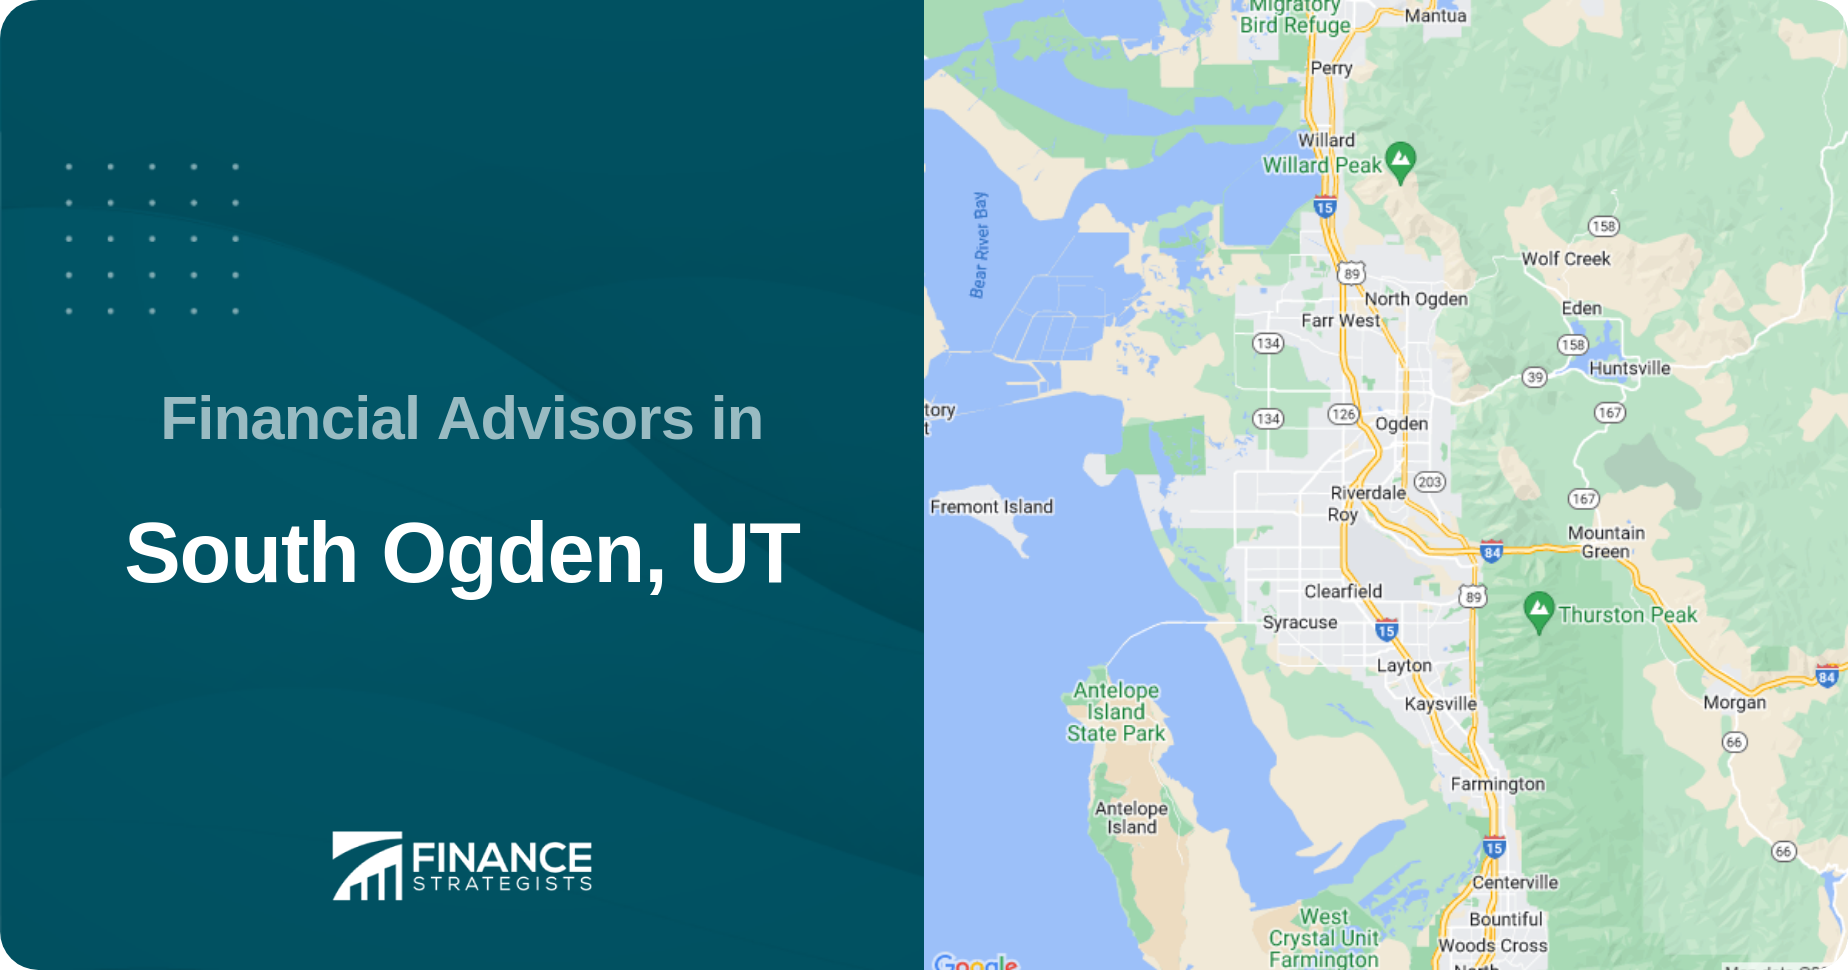 Financial Advisors in South Ogden, UT